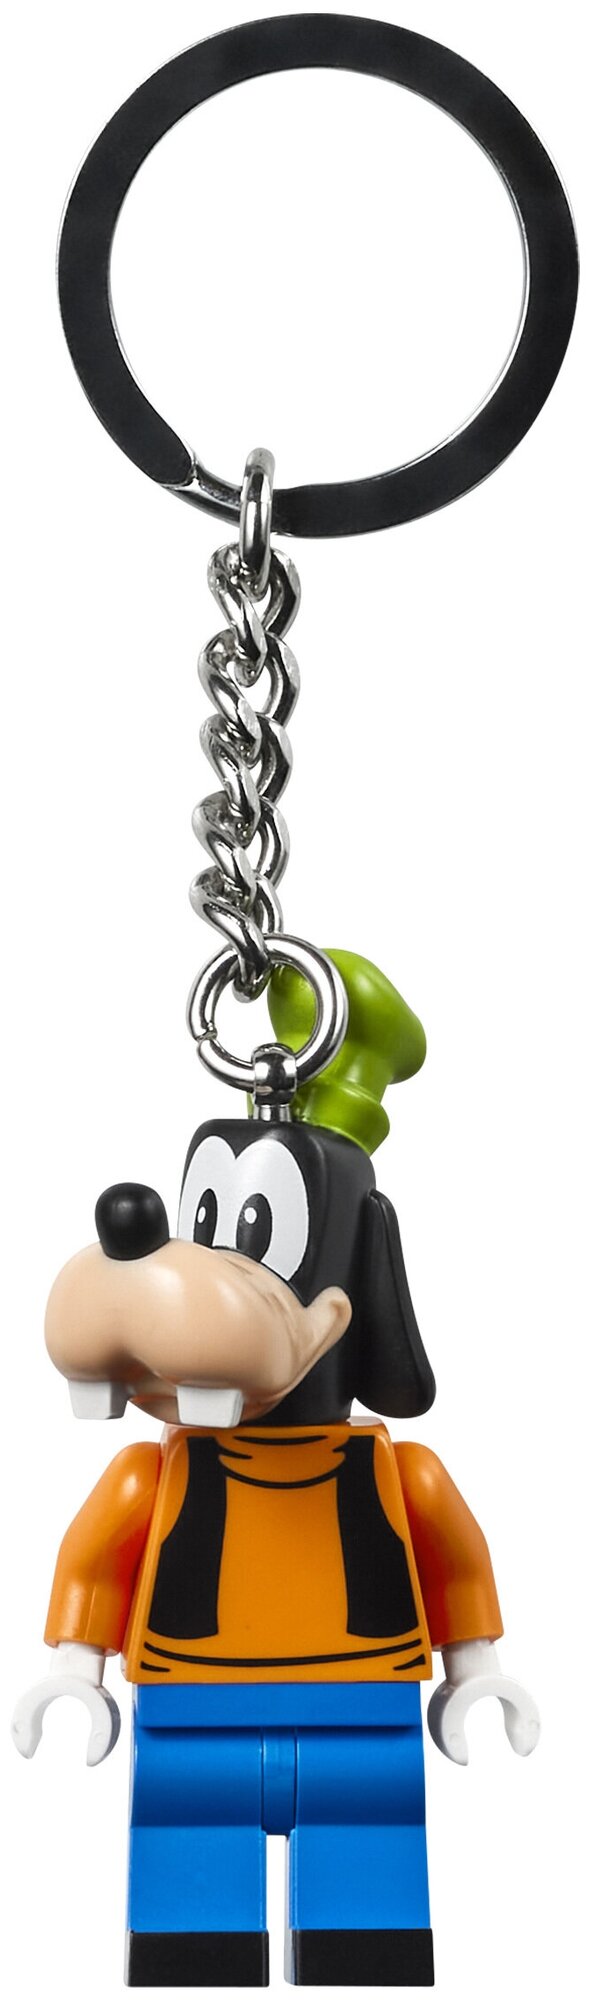 Брелок LEGO Смешной персонаж серии Дисней - Гуфи Disney Goofy